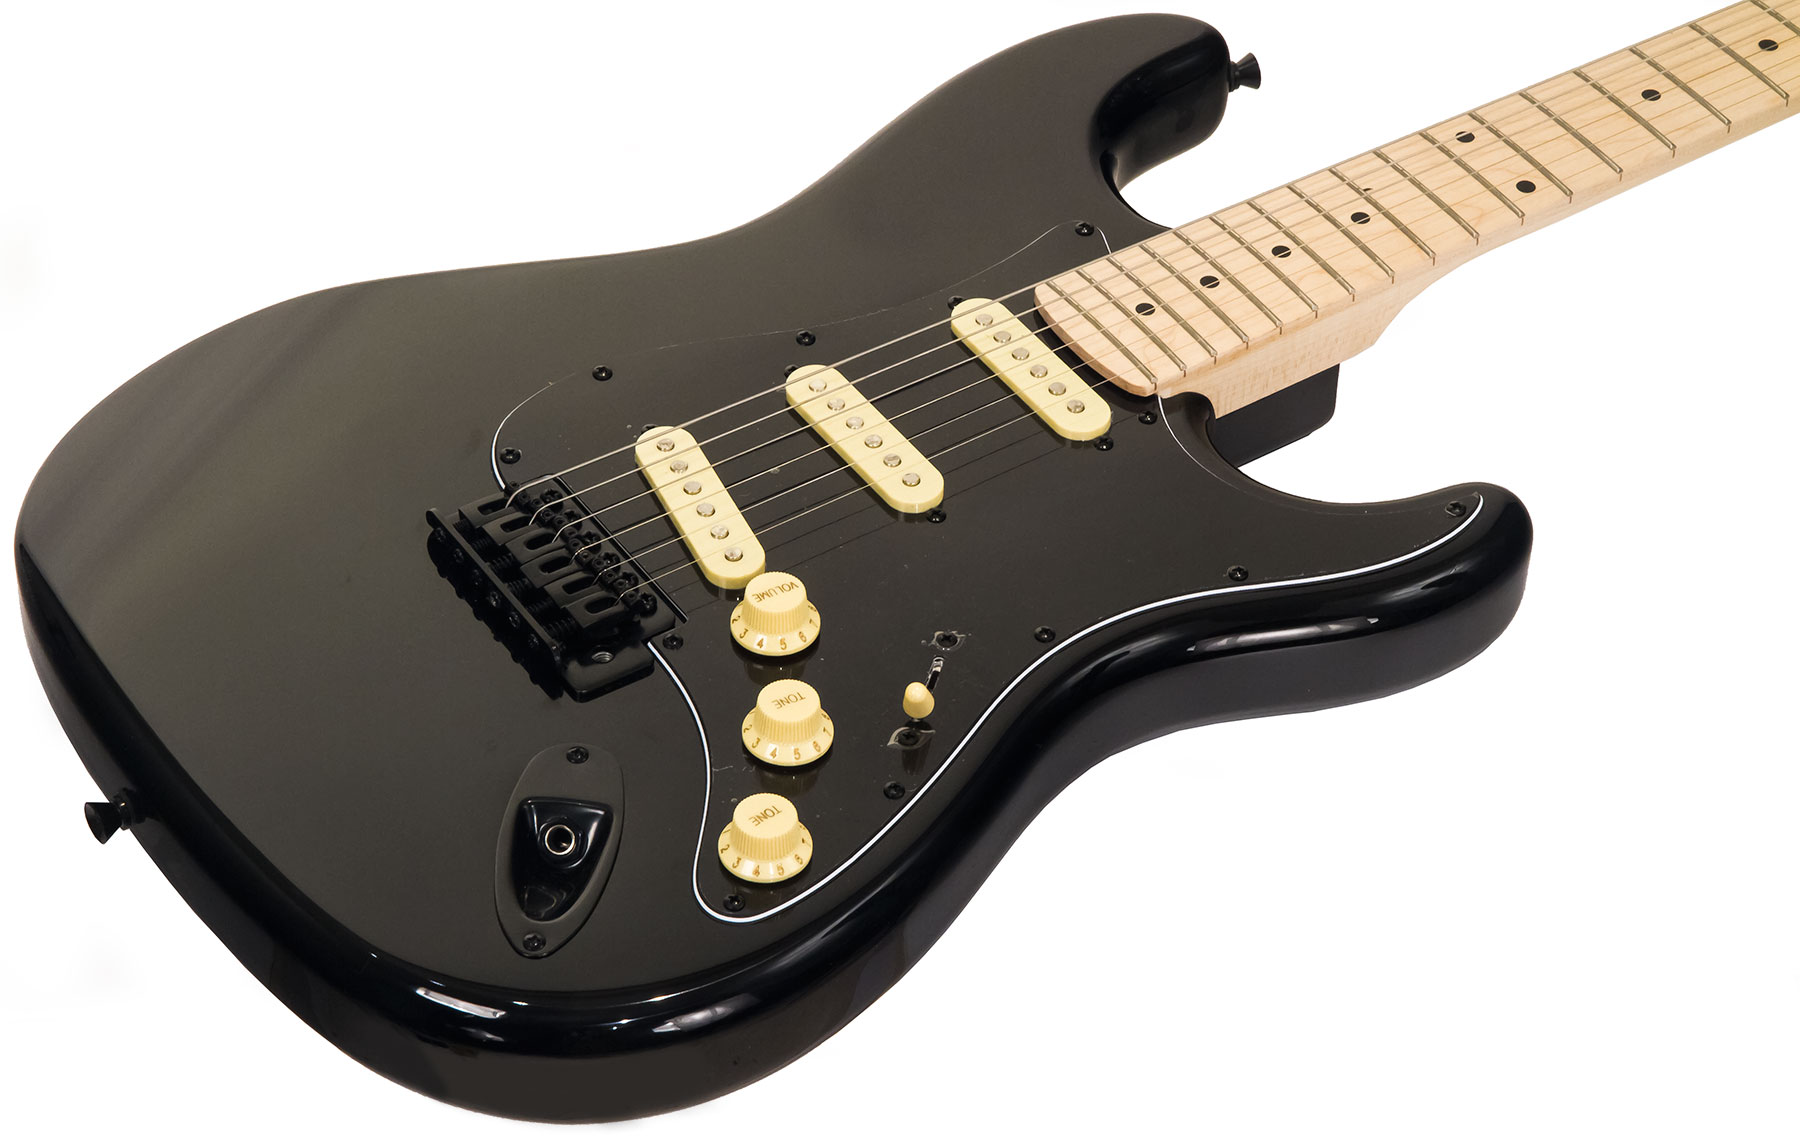 Eastone Str70 Gil Sss Trem Mn - Black - E-Gitarre in Str-Form - Variation 1